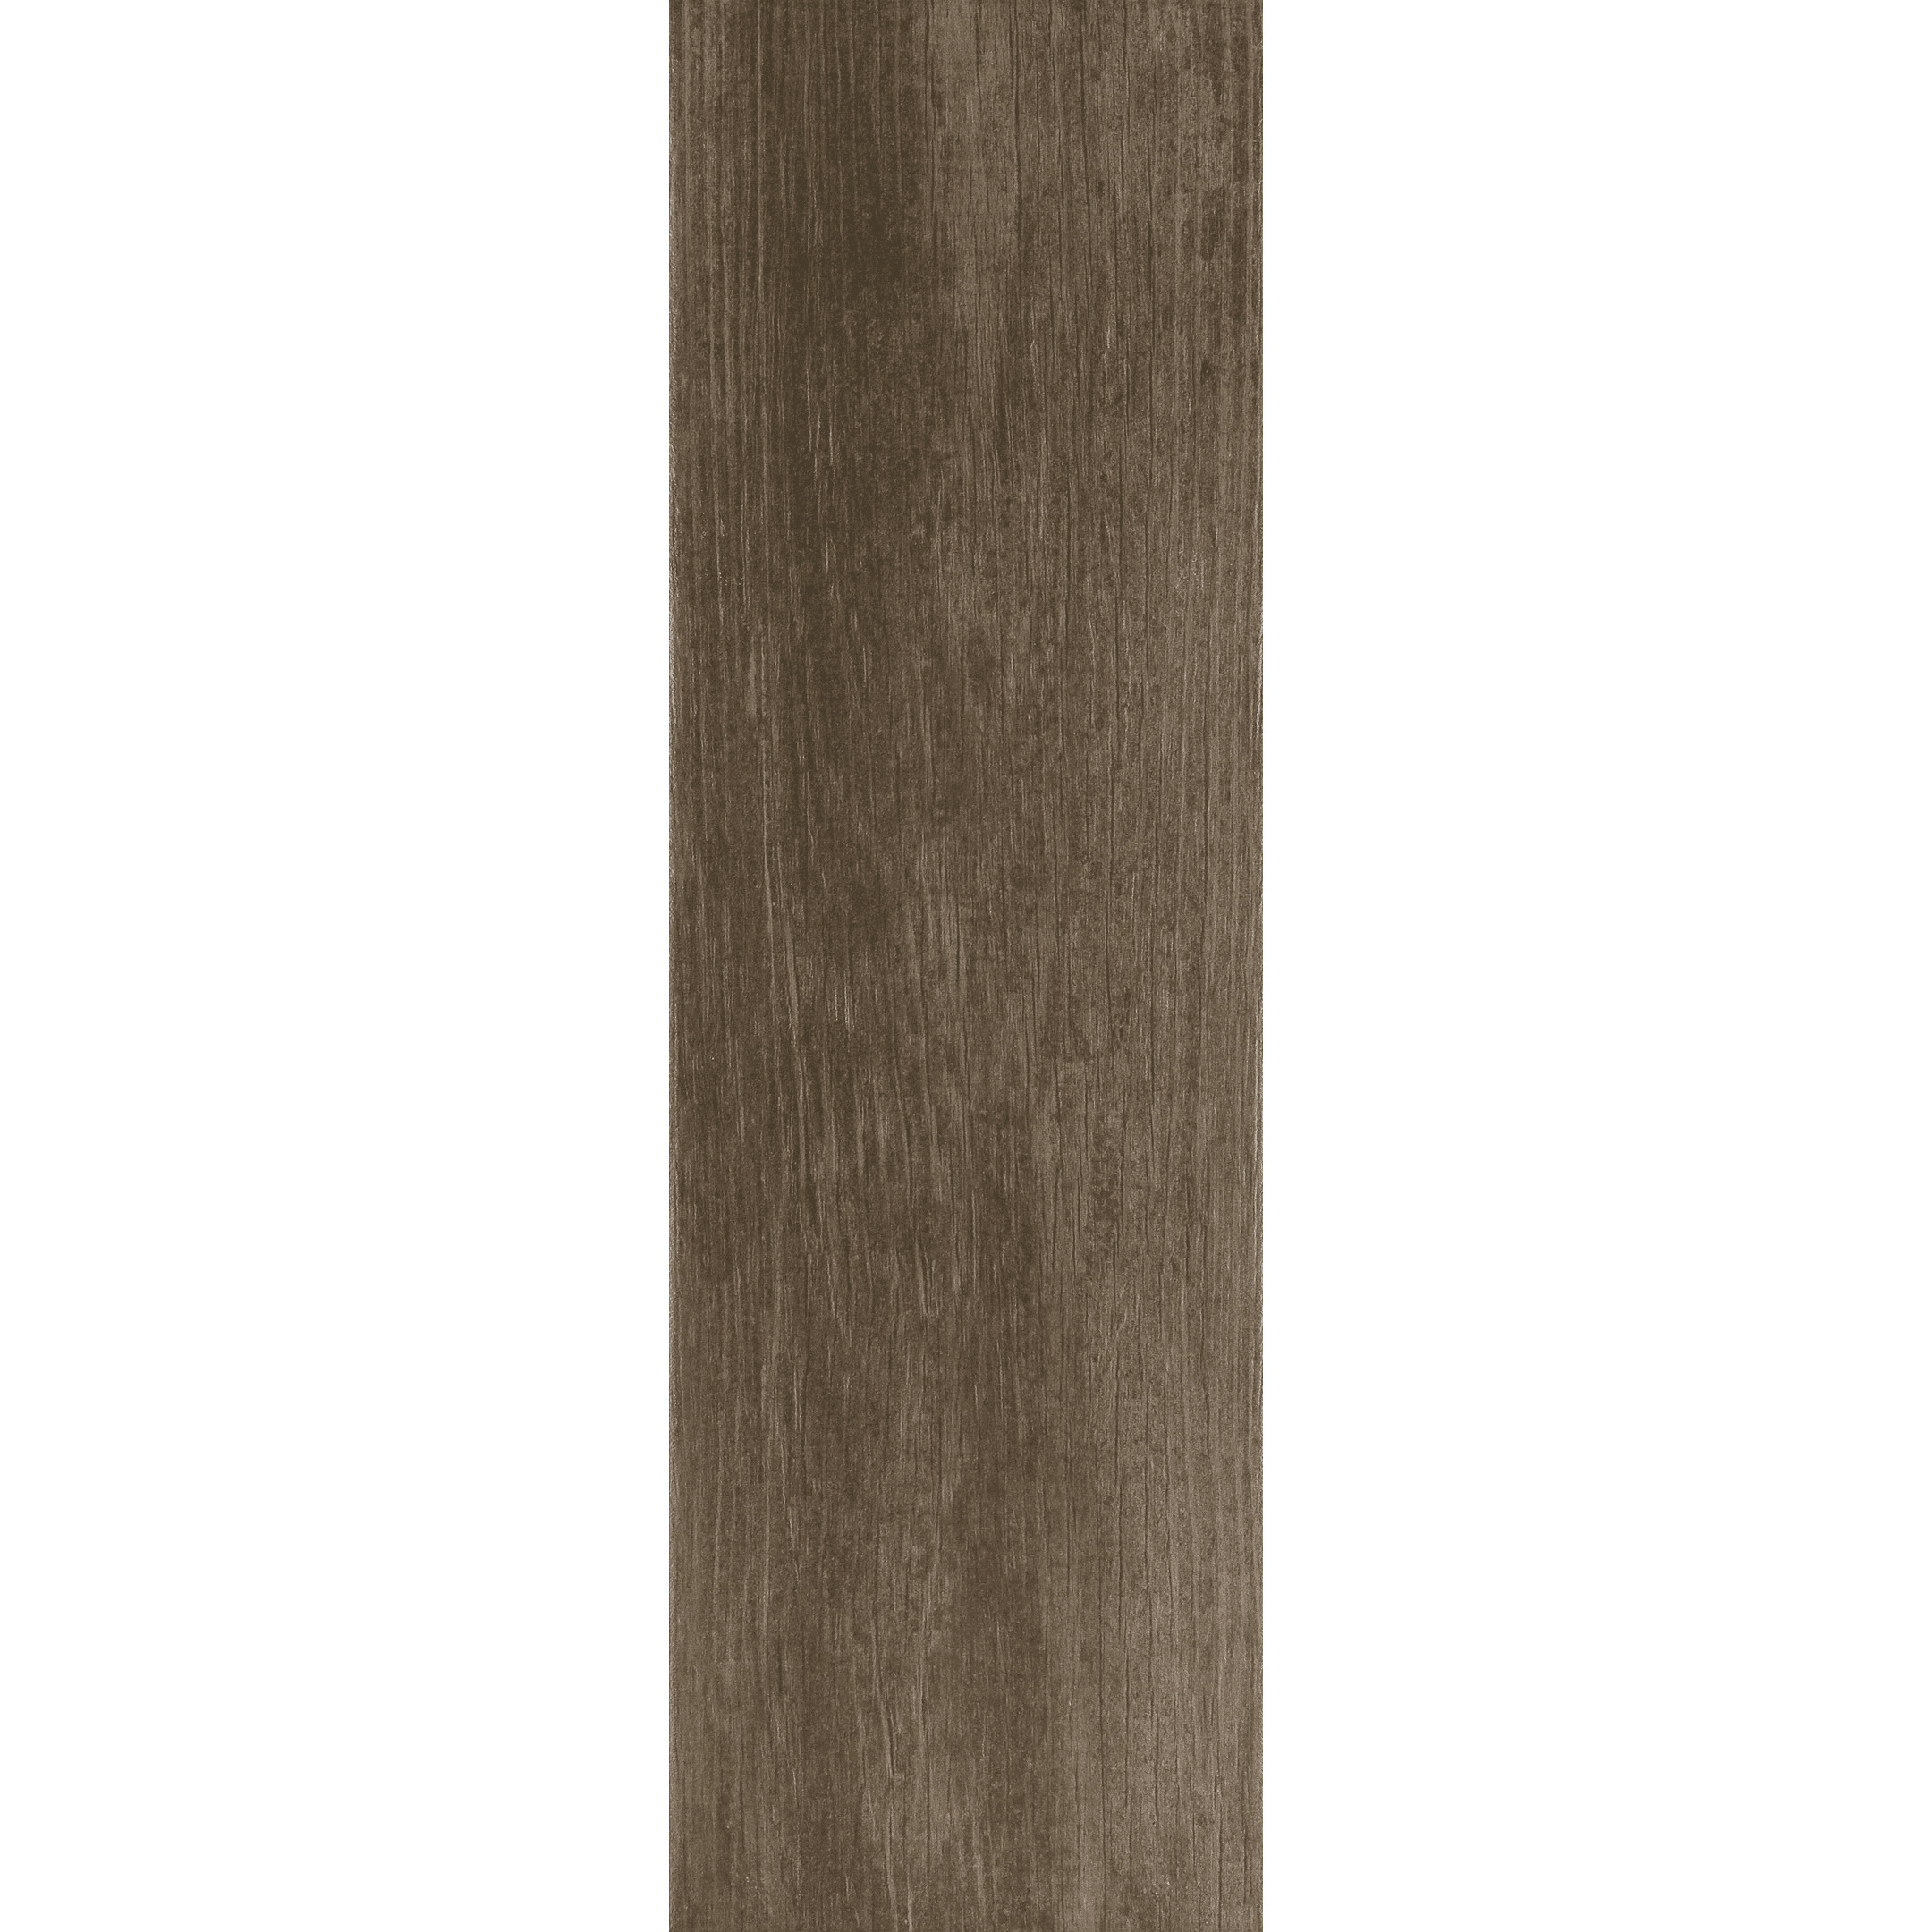 фото Керамогранит cersanit finwood темно-коричневый матовый 598х185х7,5 мм (11 шт.=1,216 кв.м)